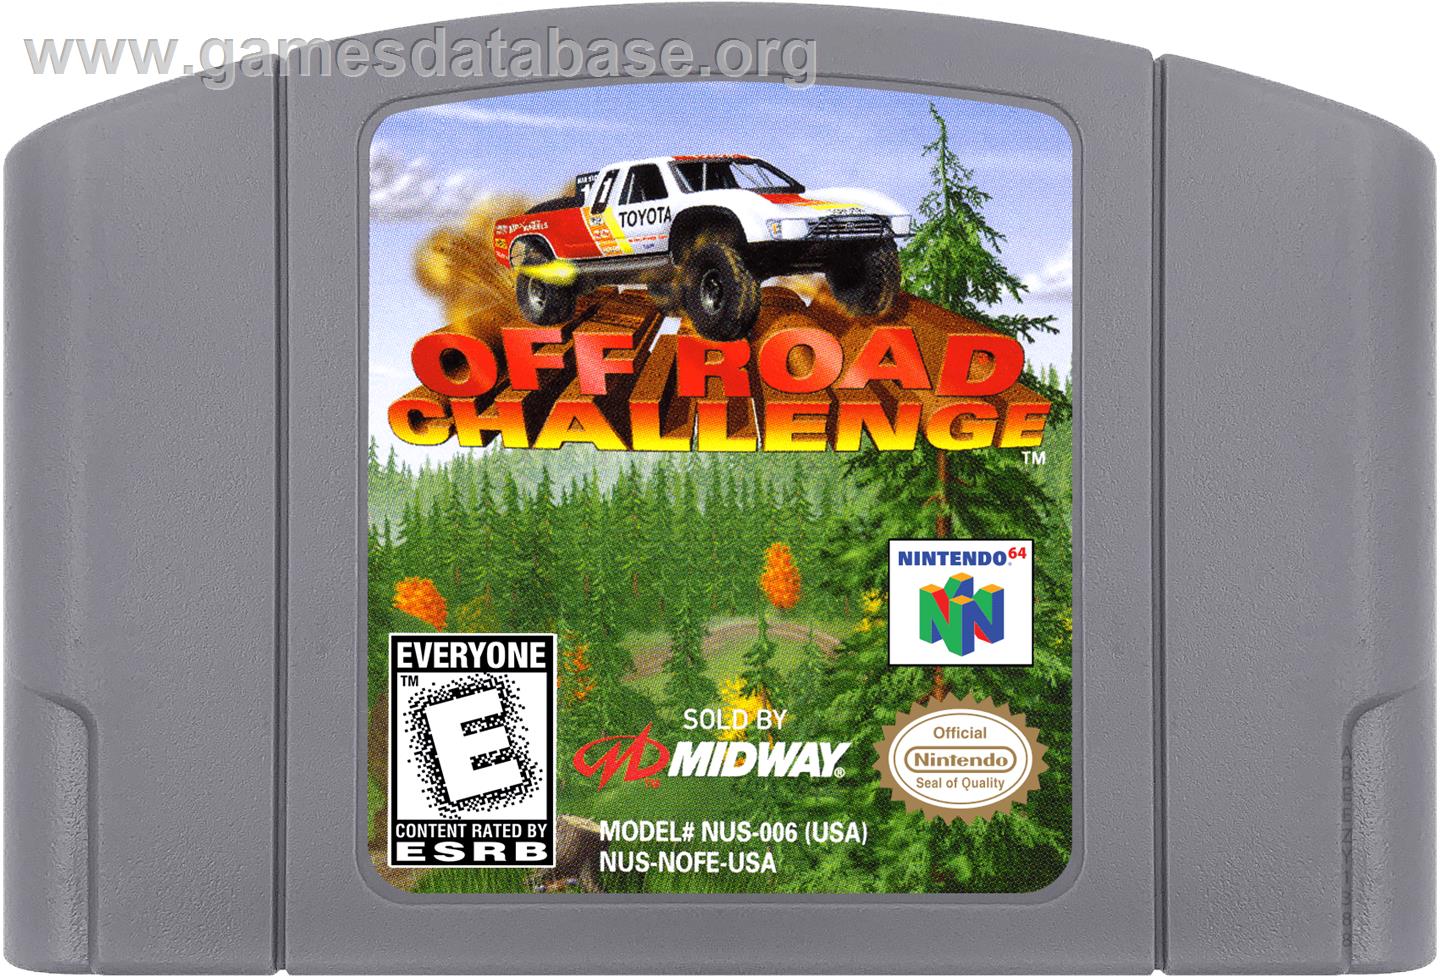 Off Road Challenge - Nintendo N64 - Artwork - Cartridge